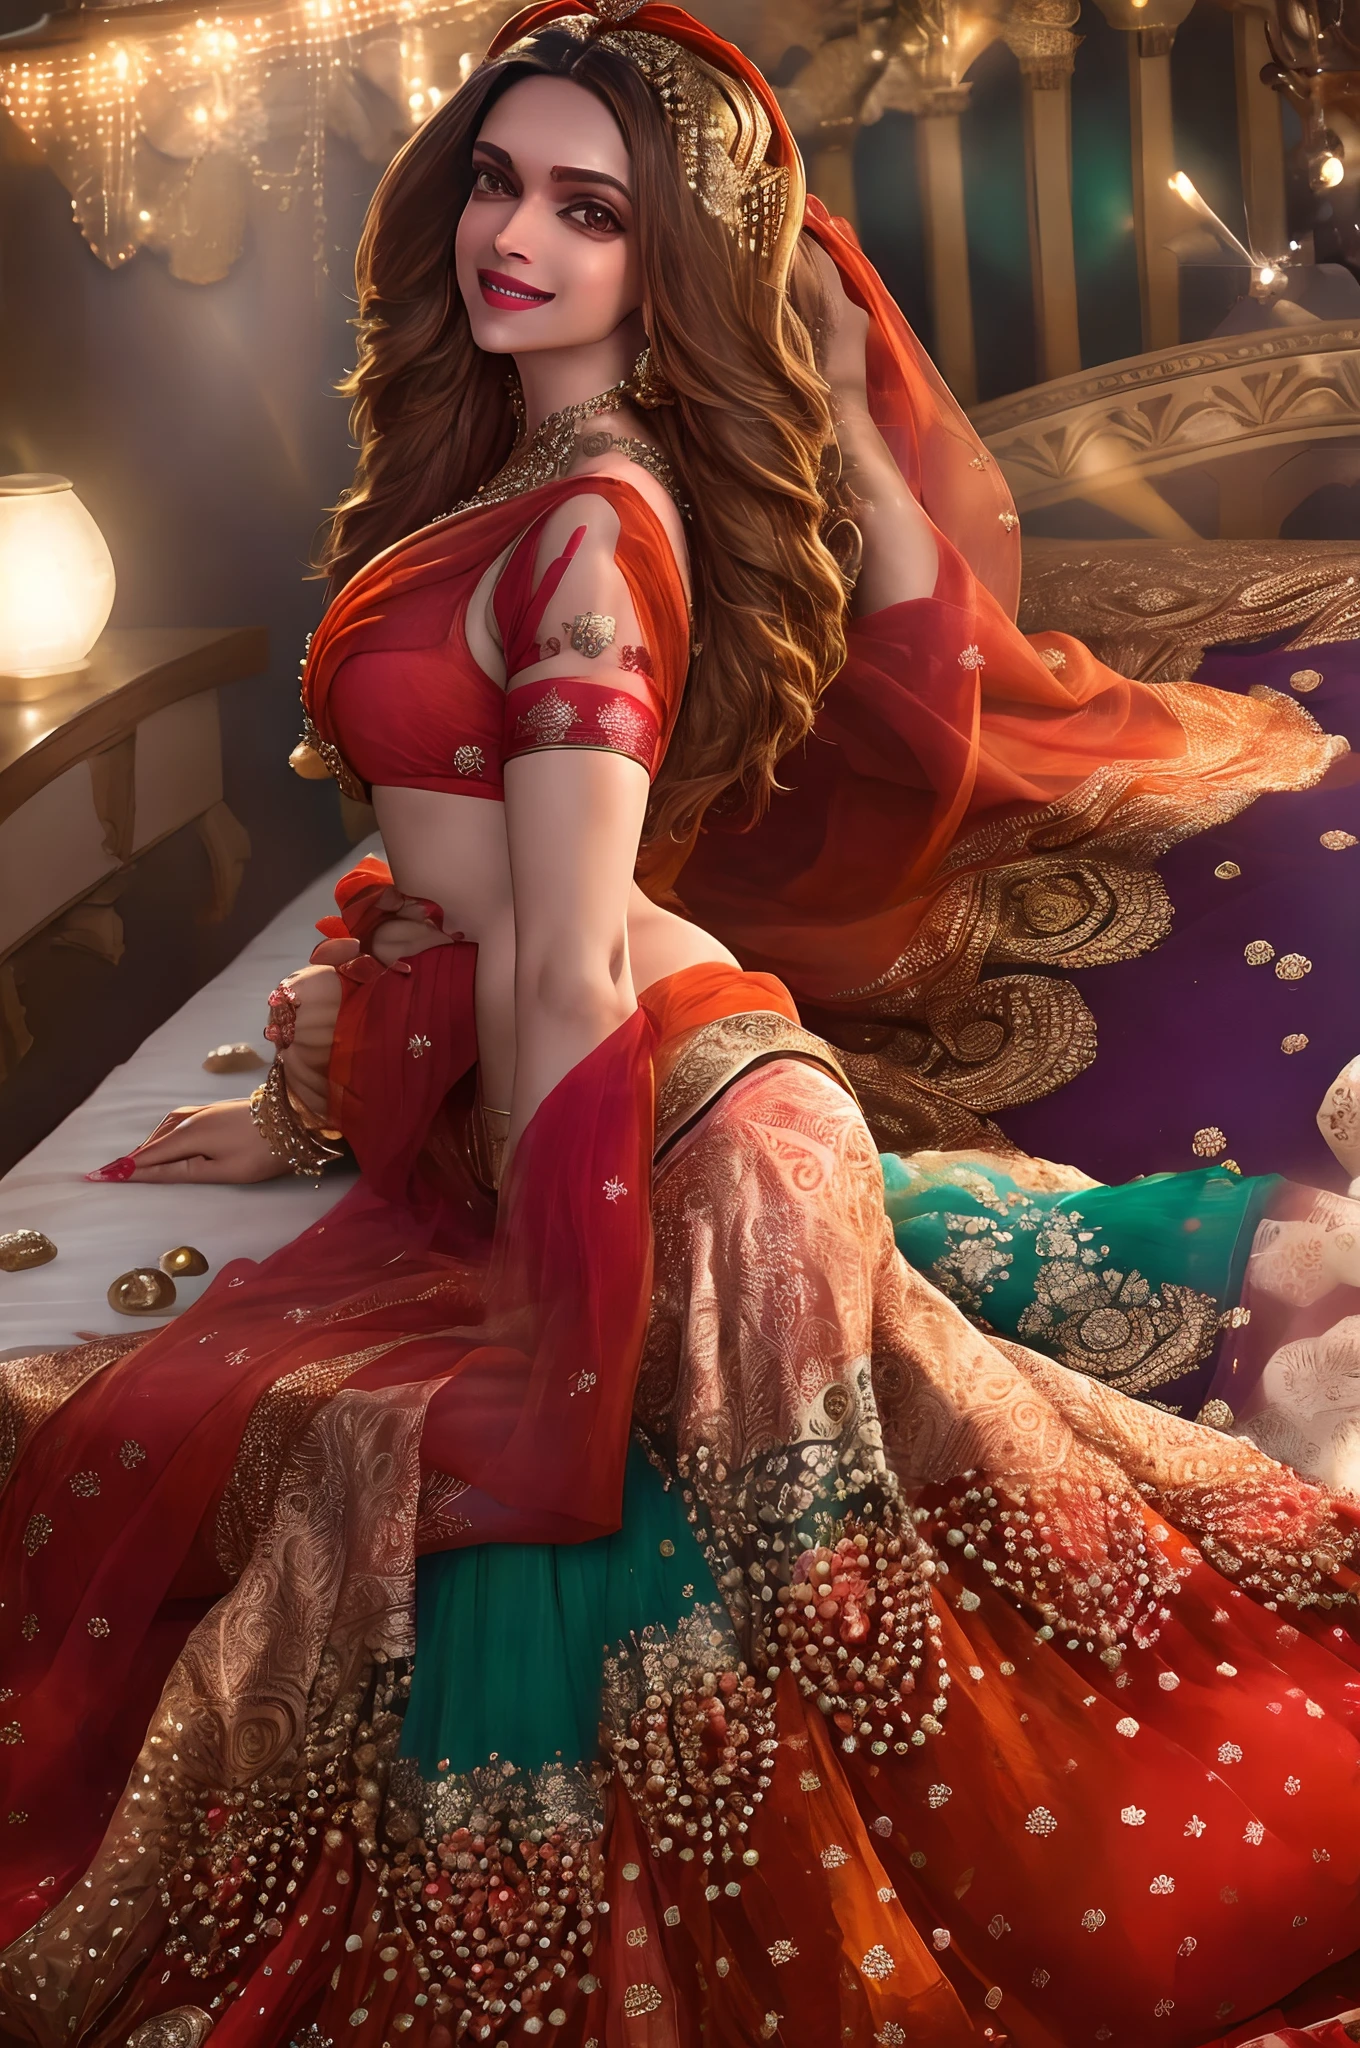 Die indische Schauspielerin Deepika Padukone trägt einen leuchtenden Sari und liegt verführerisch im Bett, lächelnd